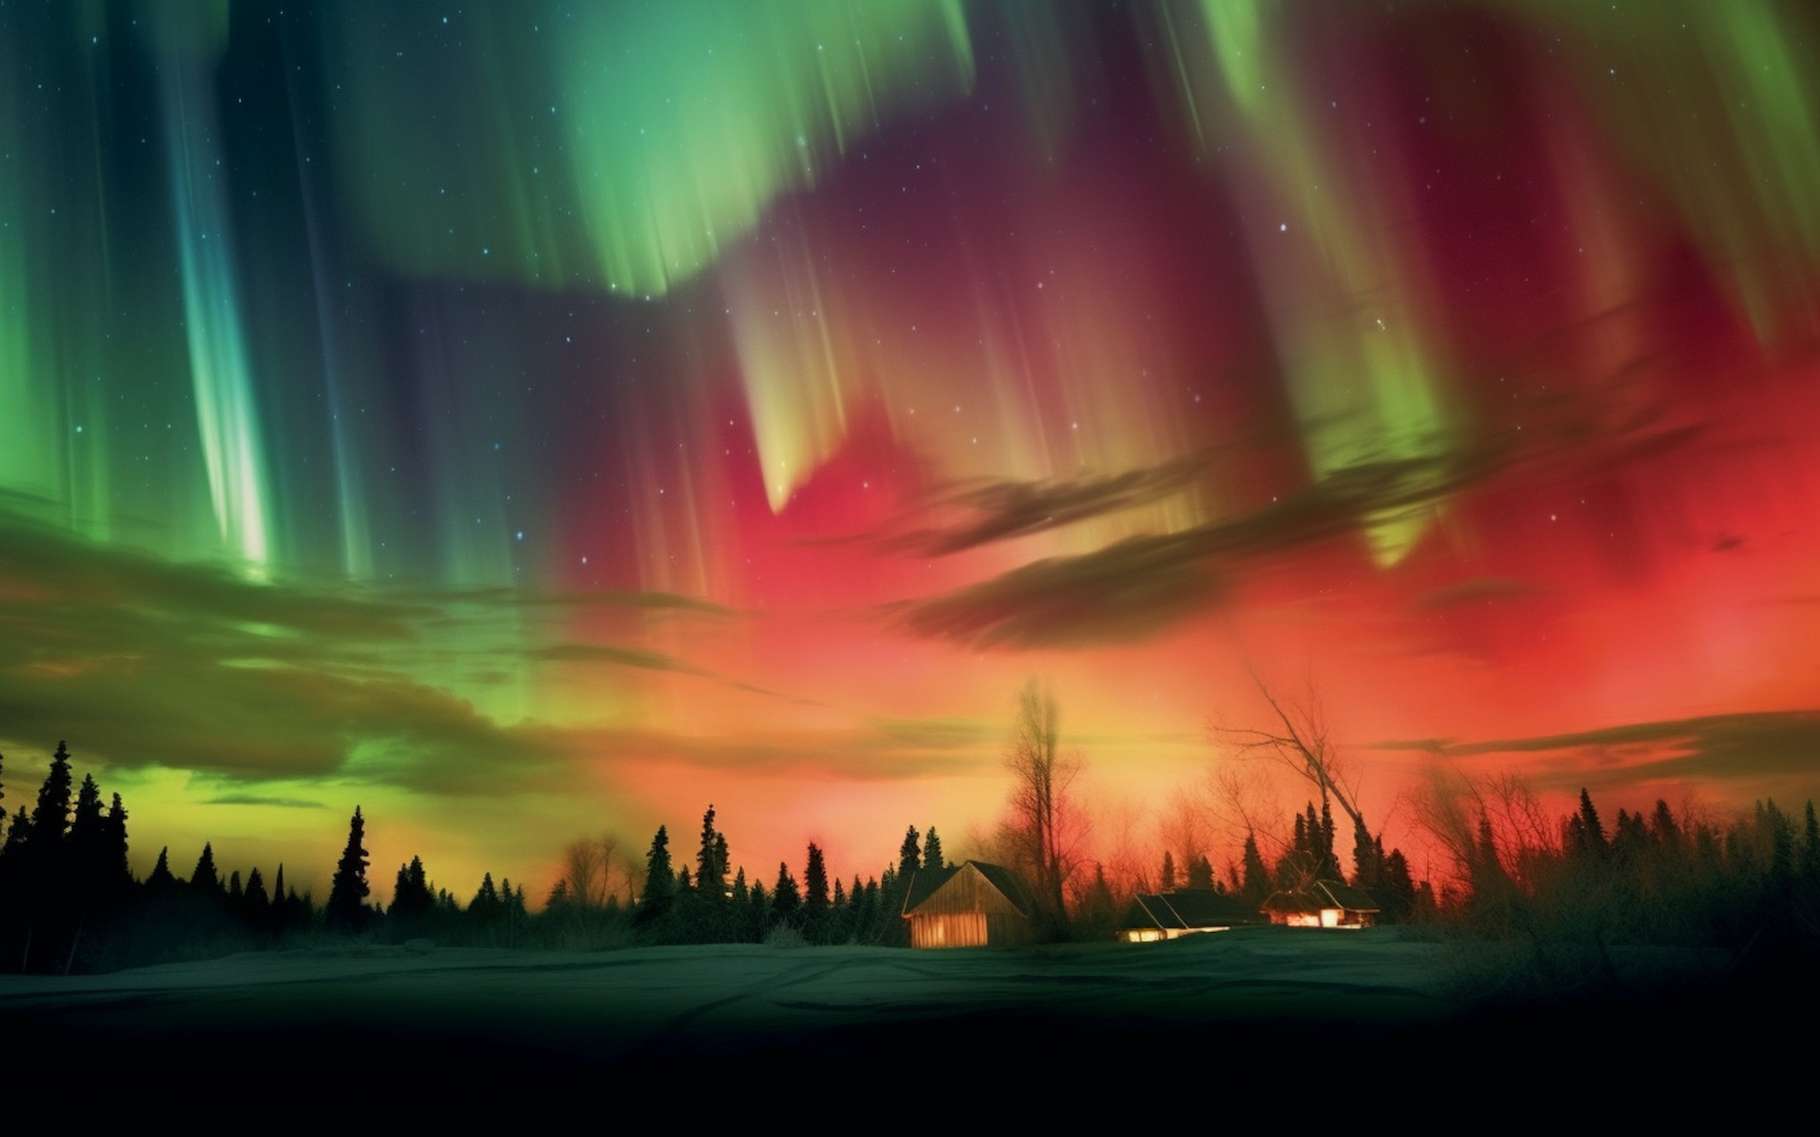 Des aurores boréales orange qui ne sont pas censées exister observées dans le ciel du Canada